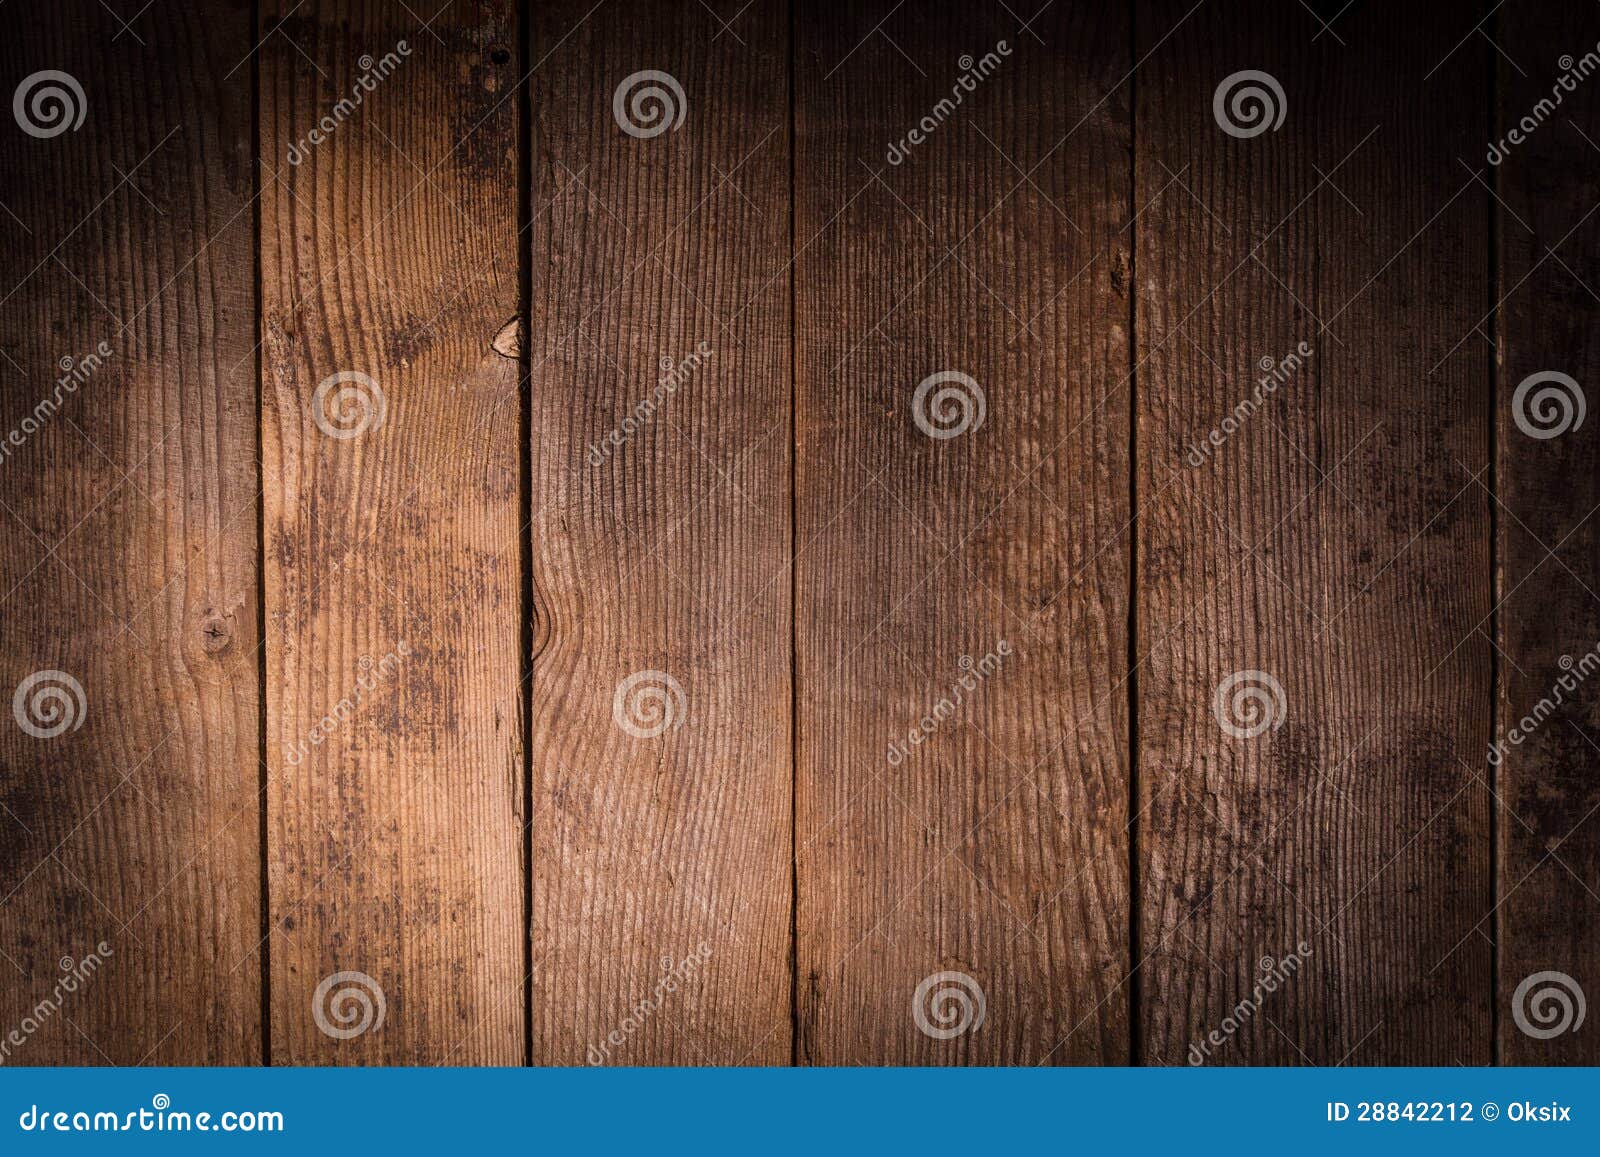 Backgorund di legno. Vecchio primo piano di legno del fondo per il disegno